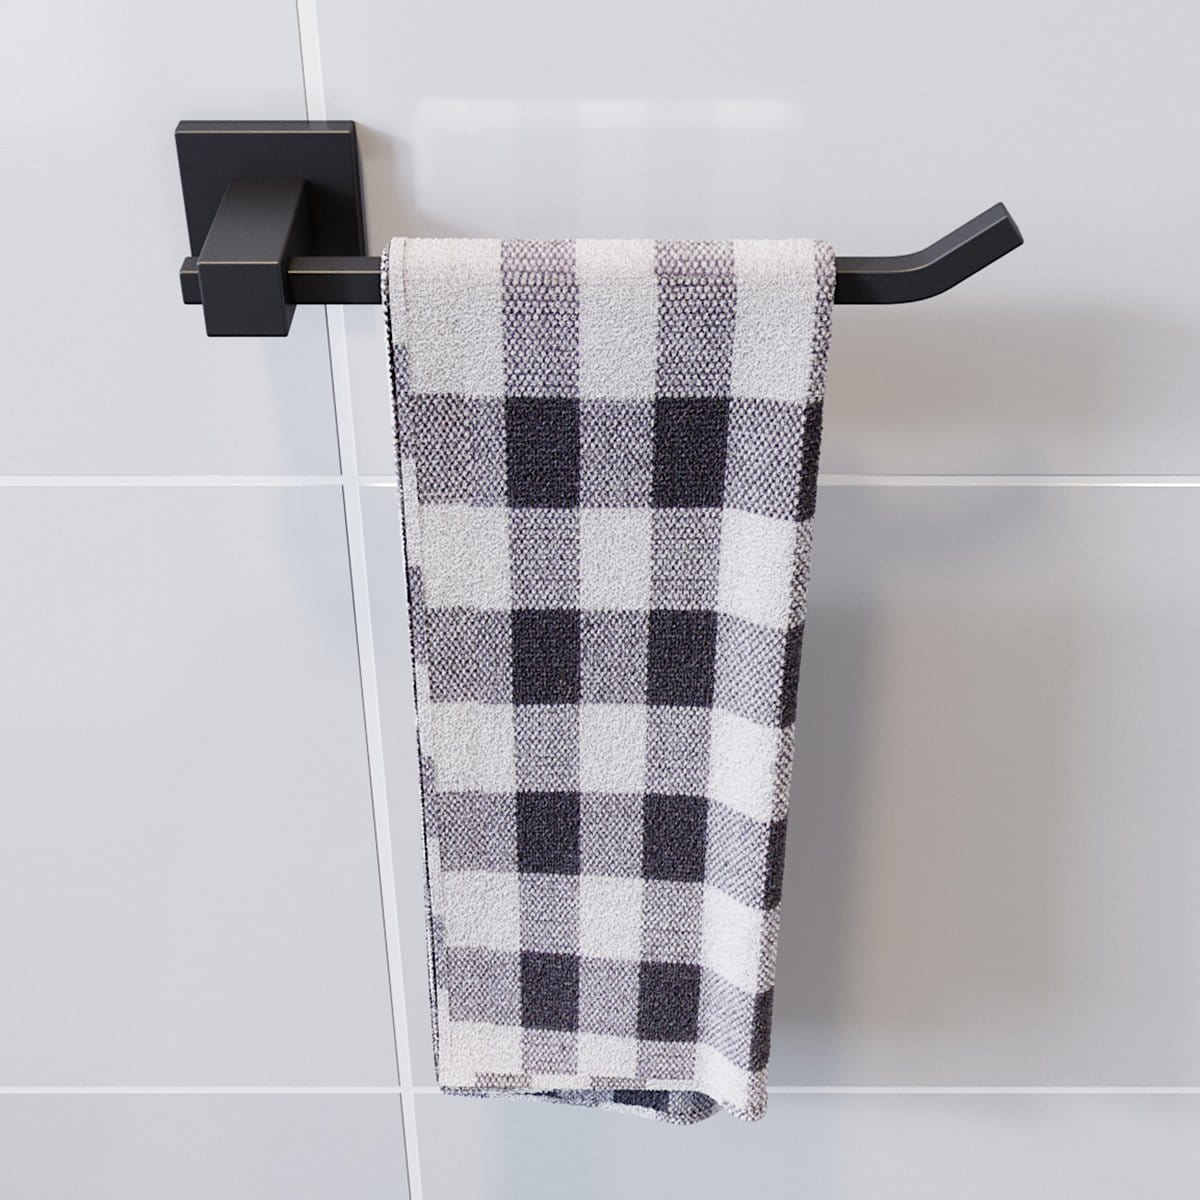 Towel Rail Bathroom Towel Rack Wall Mounted Stainless Steel Black - Elegantshowers